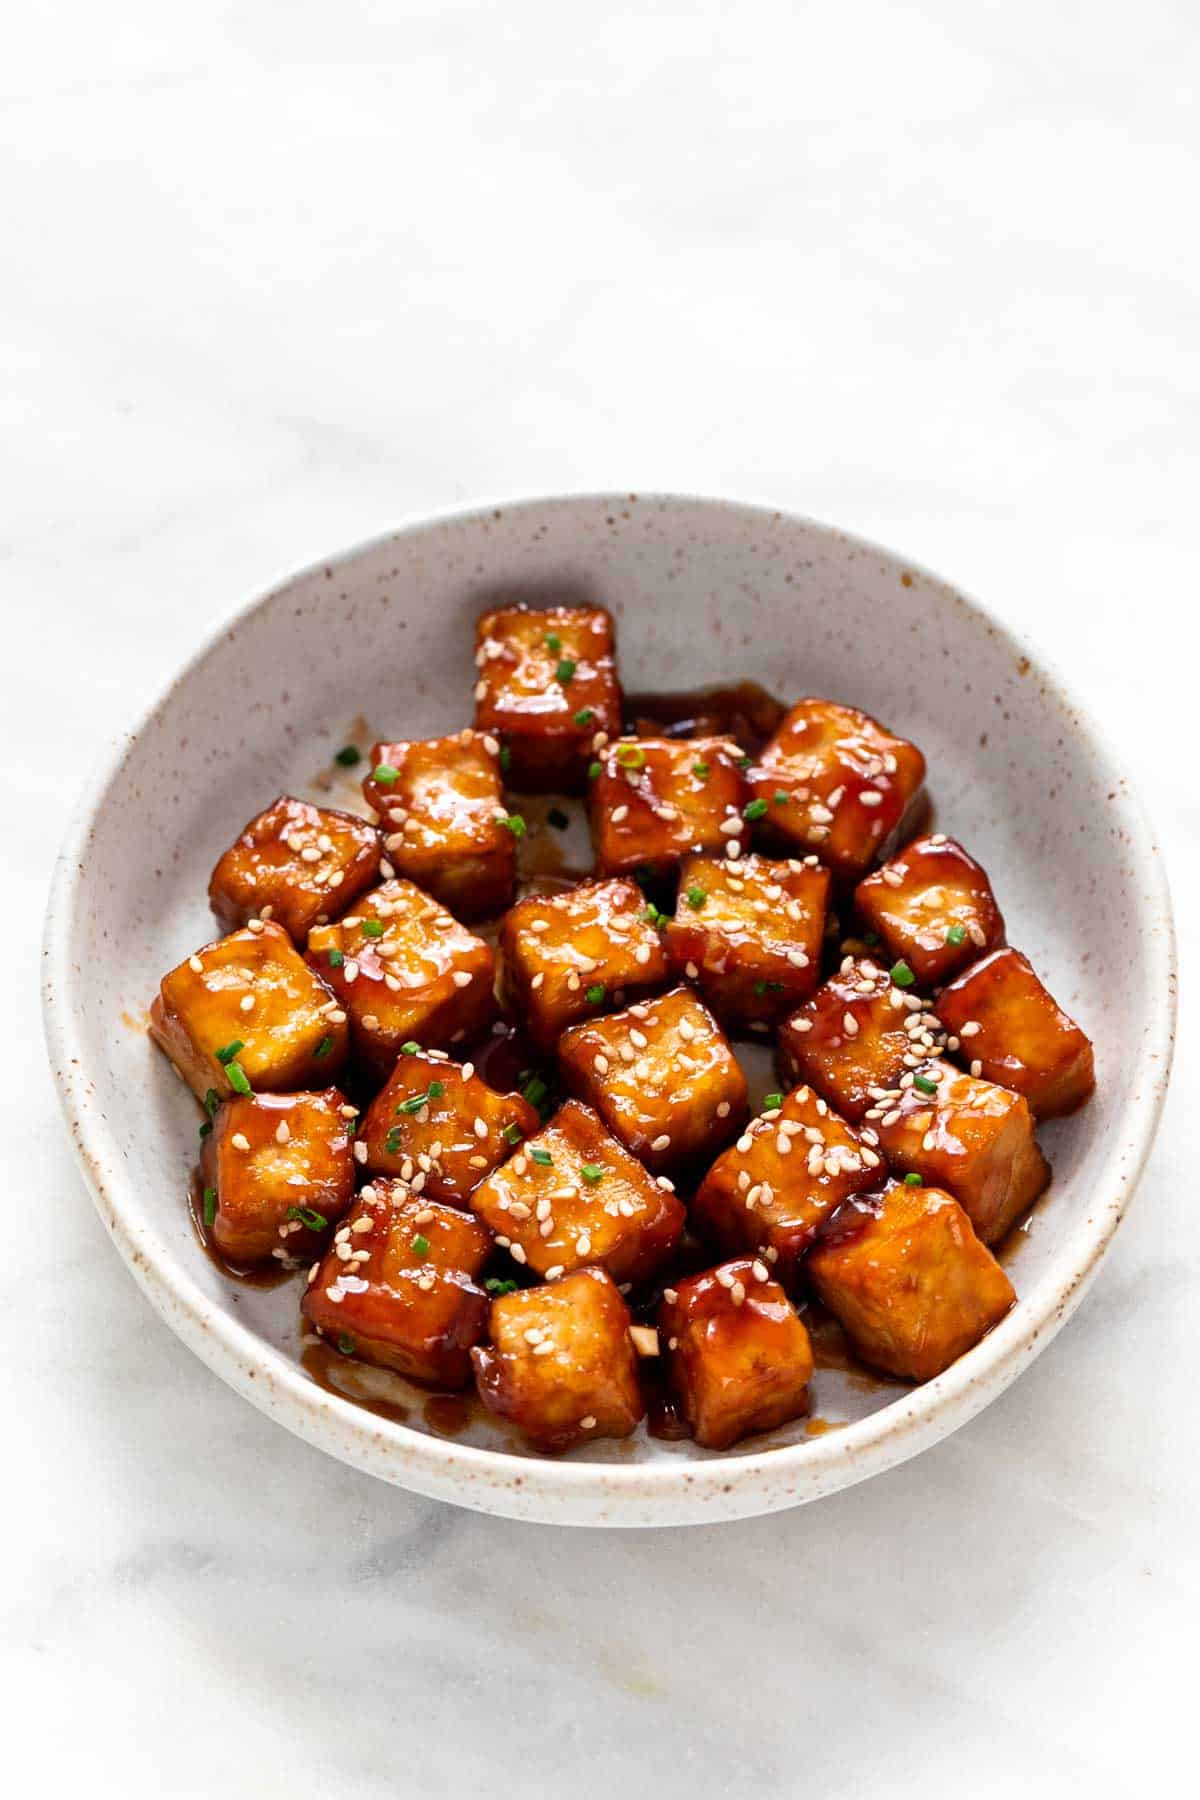 Crispy sesame tofu in a dish.